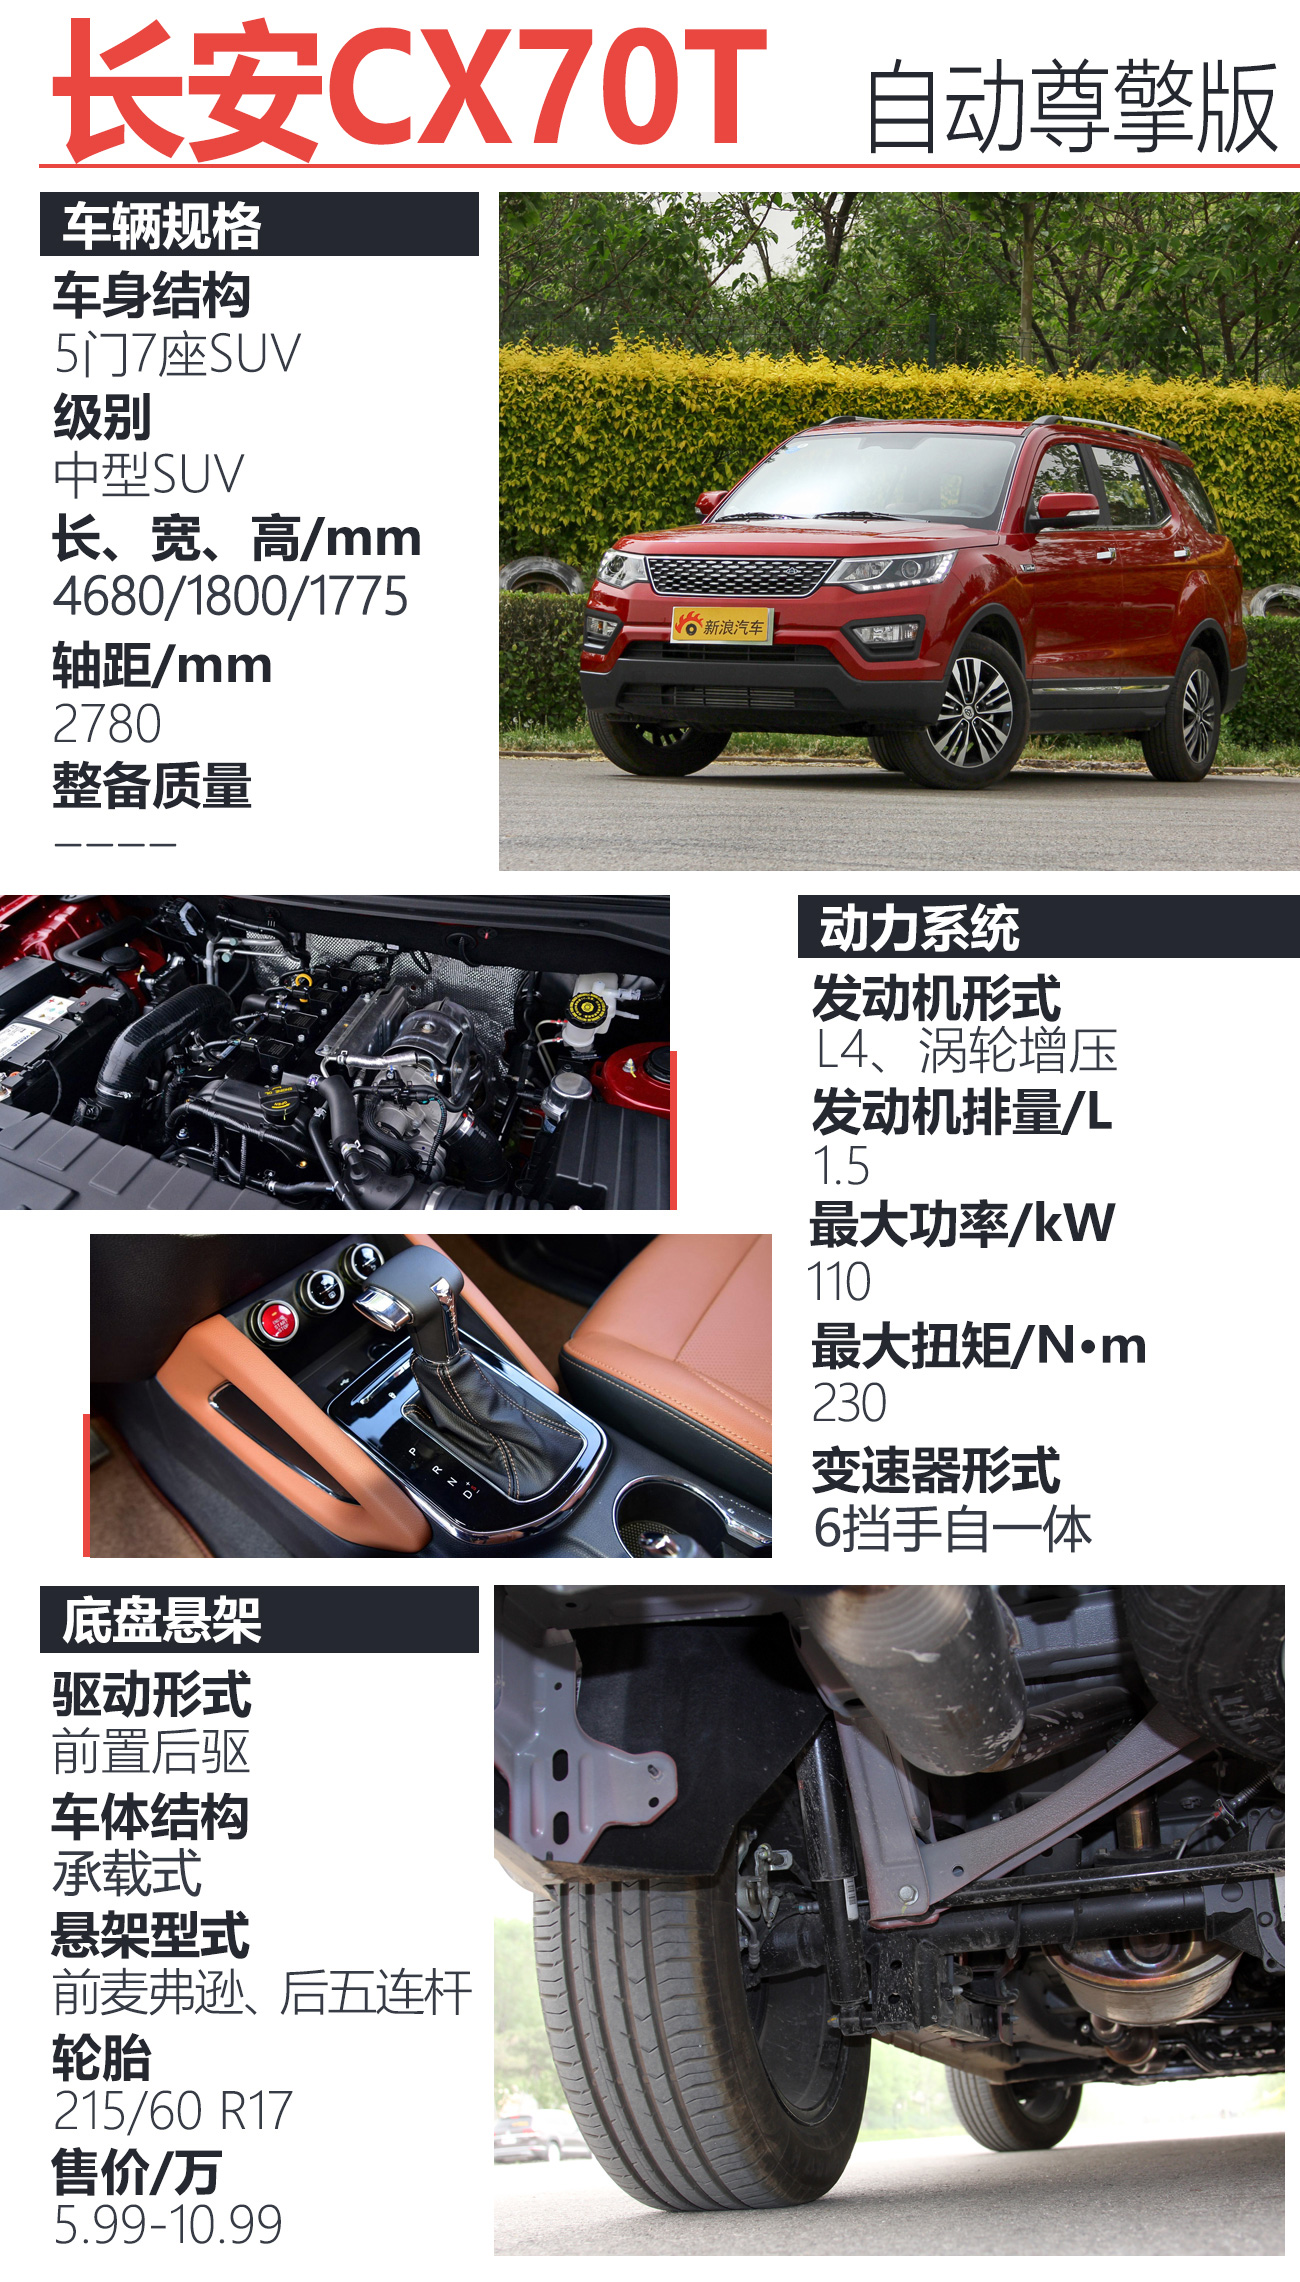 长安CX70T 2017款 1.5T 自动尊擎版